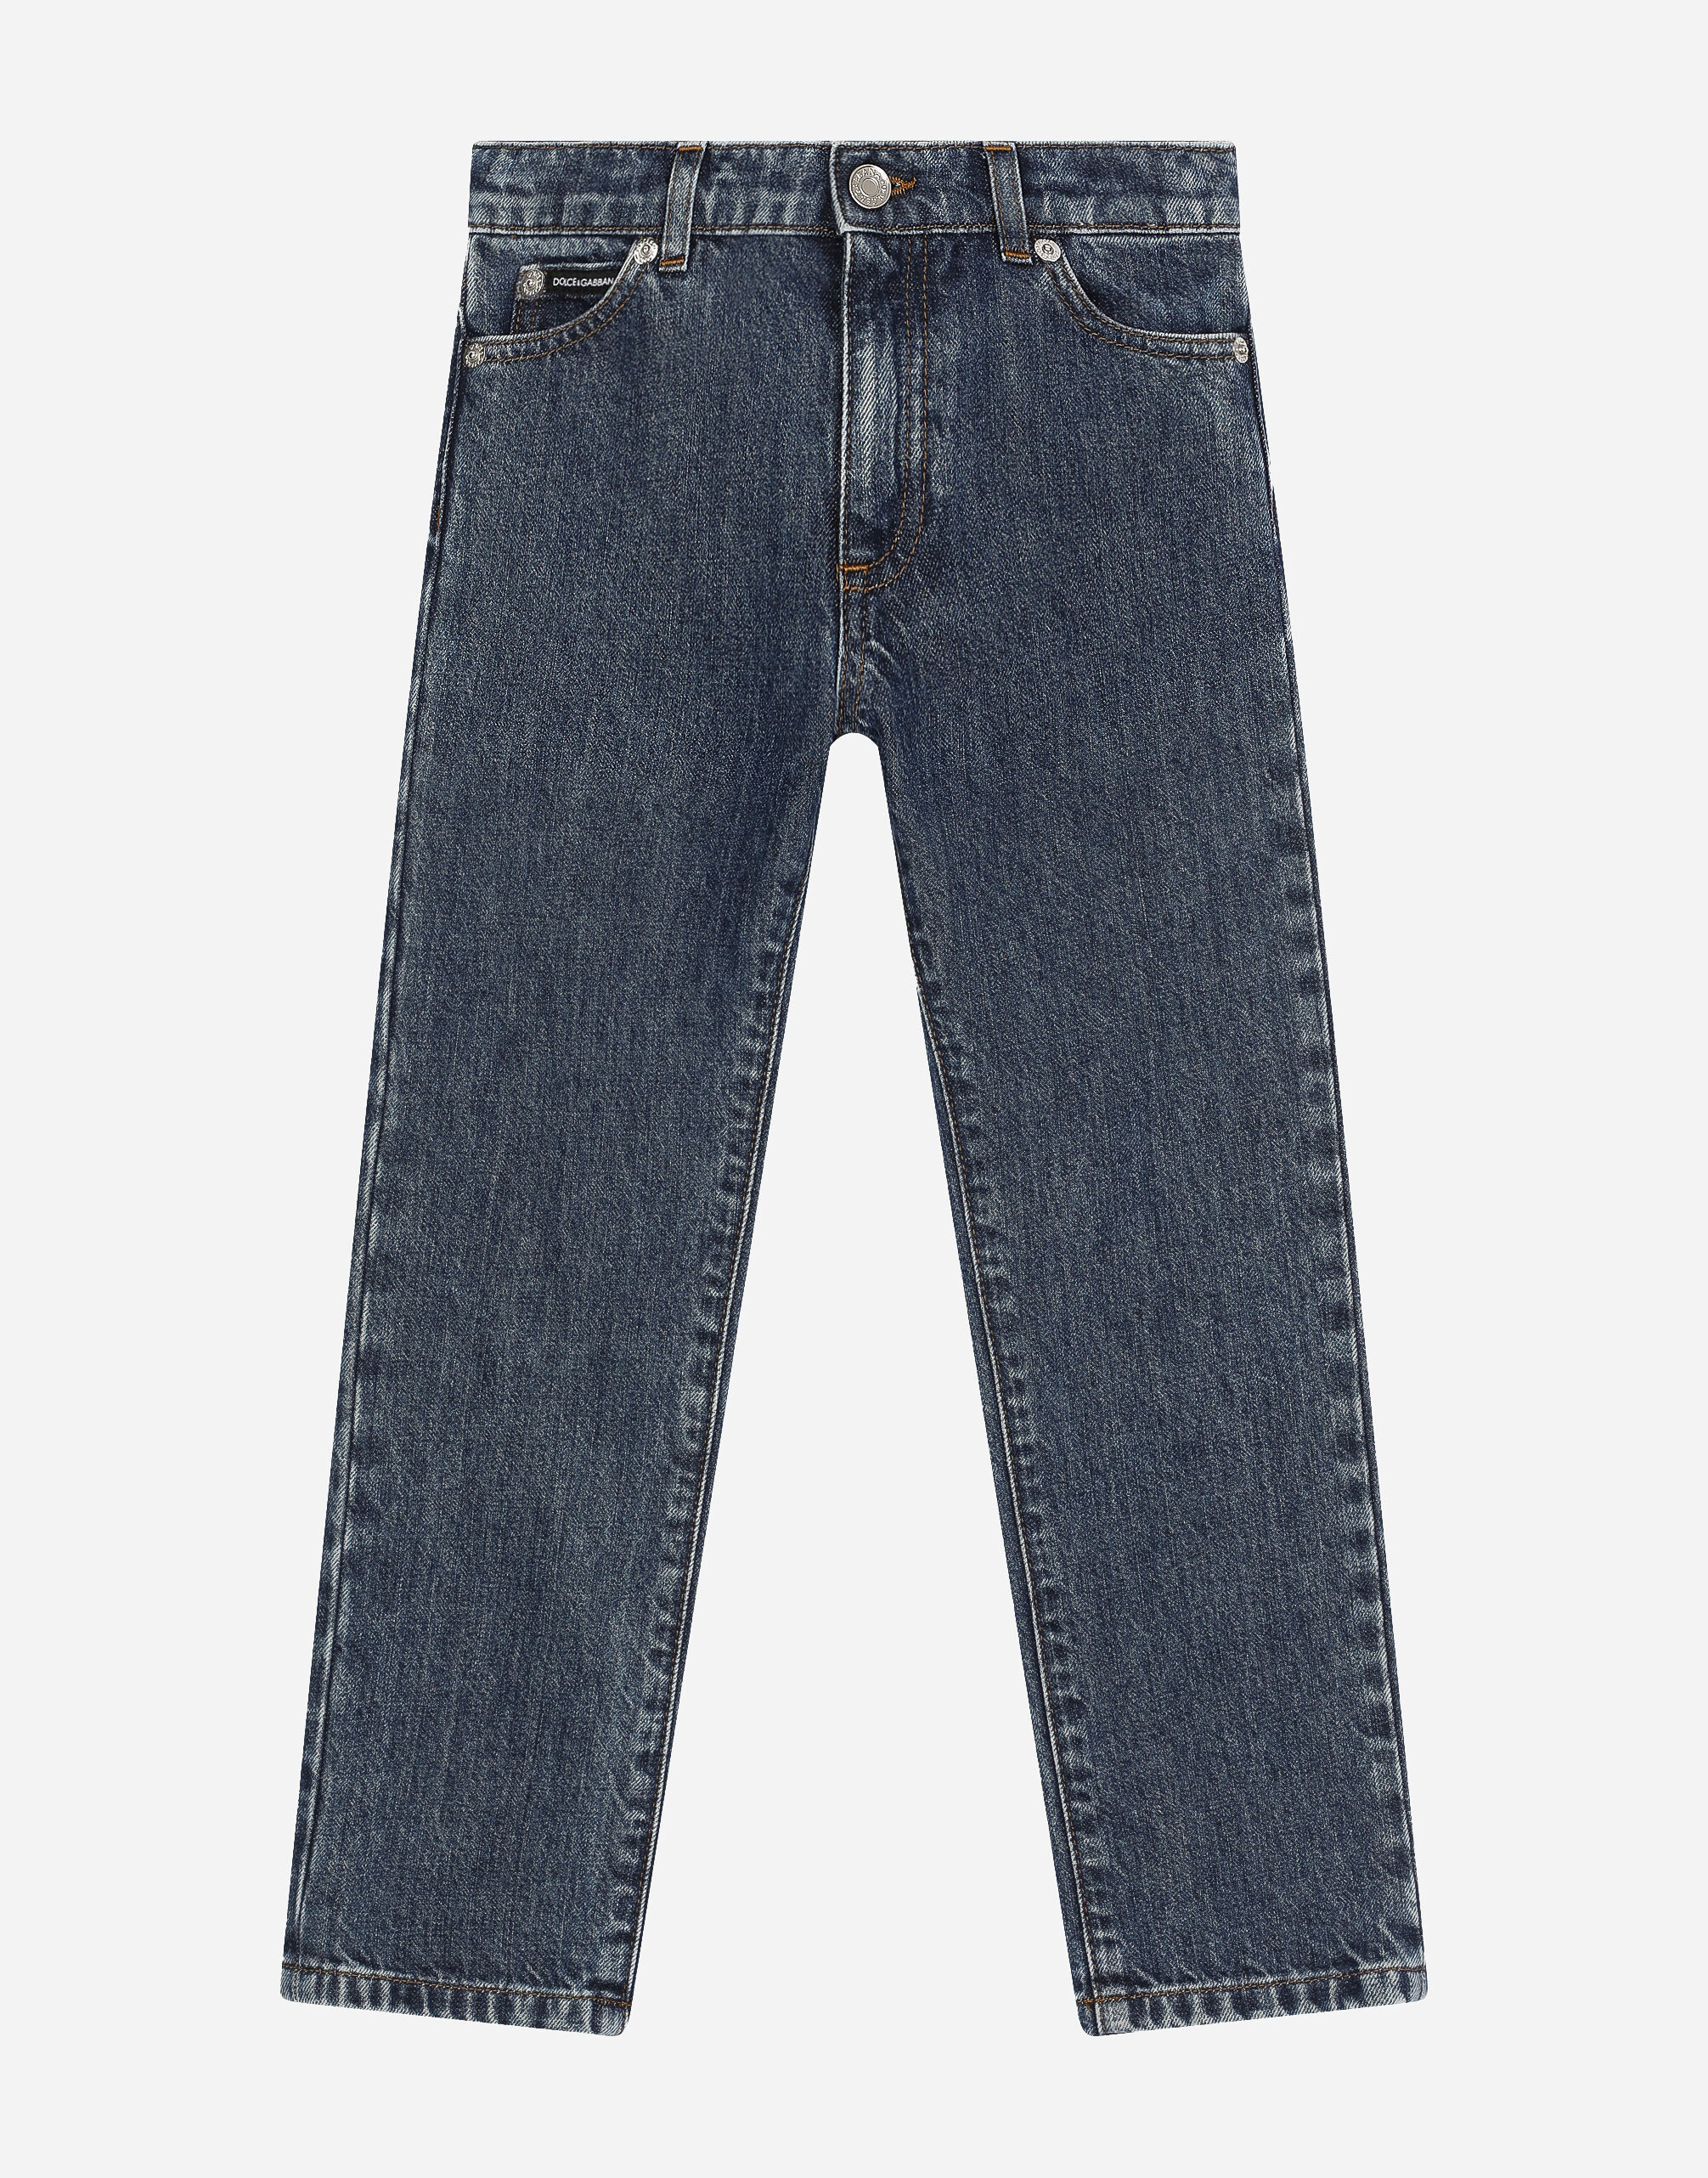 Dolce & Gabbana 5-pocket denim jeans Beige L43Q54G7NWW